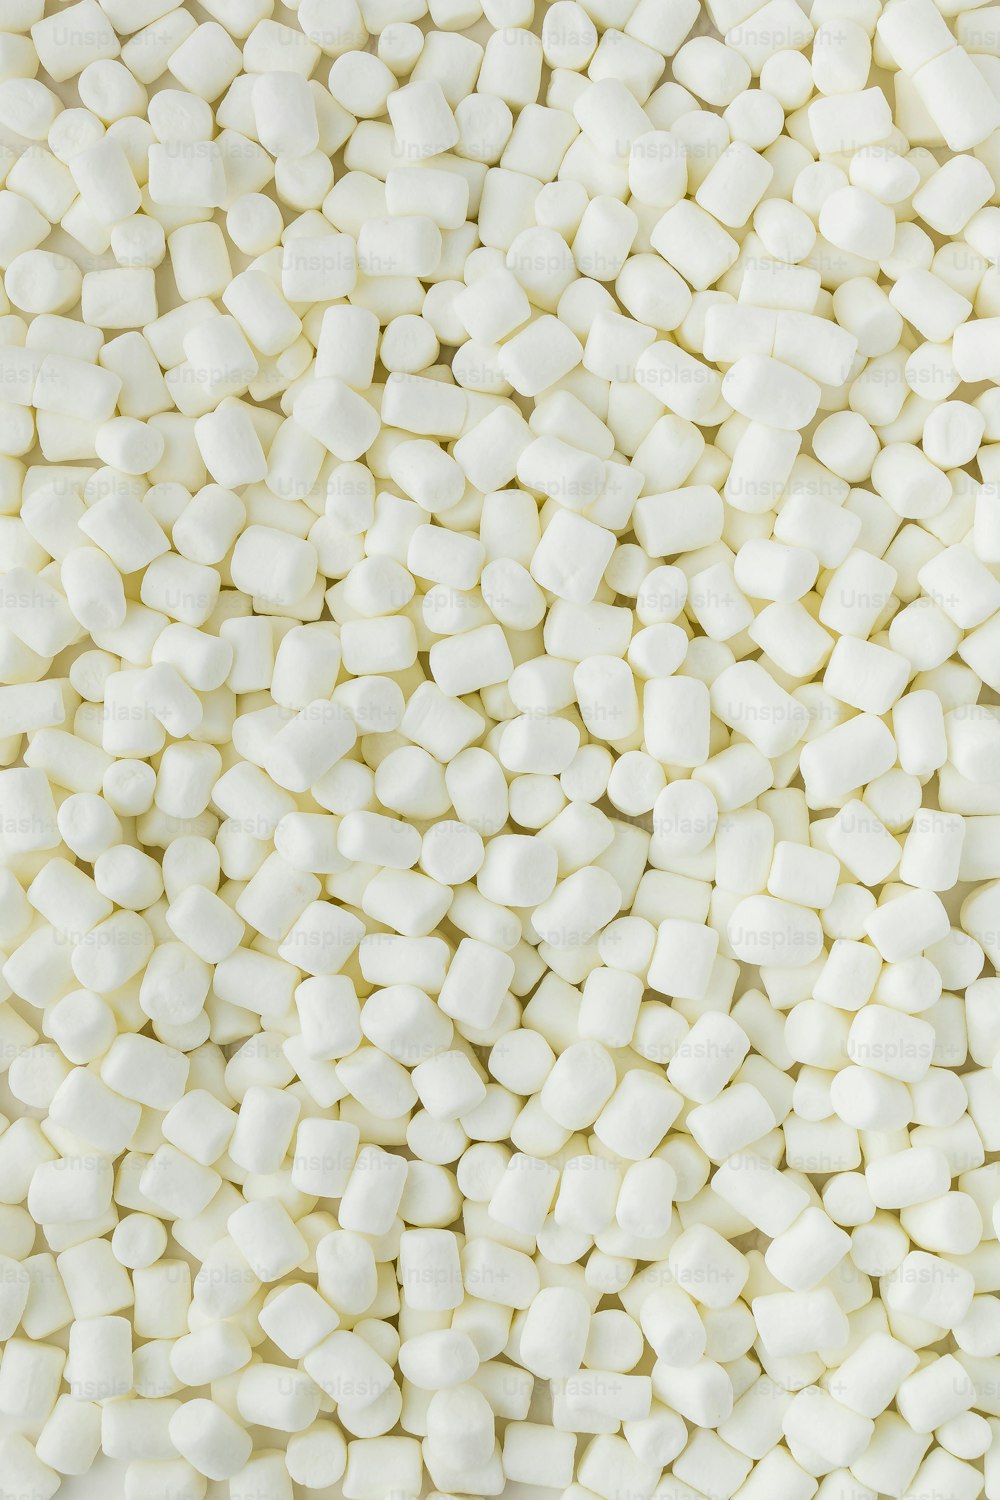 un mucchio di marshmallow bianchi seduti uno accanto all'altro